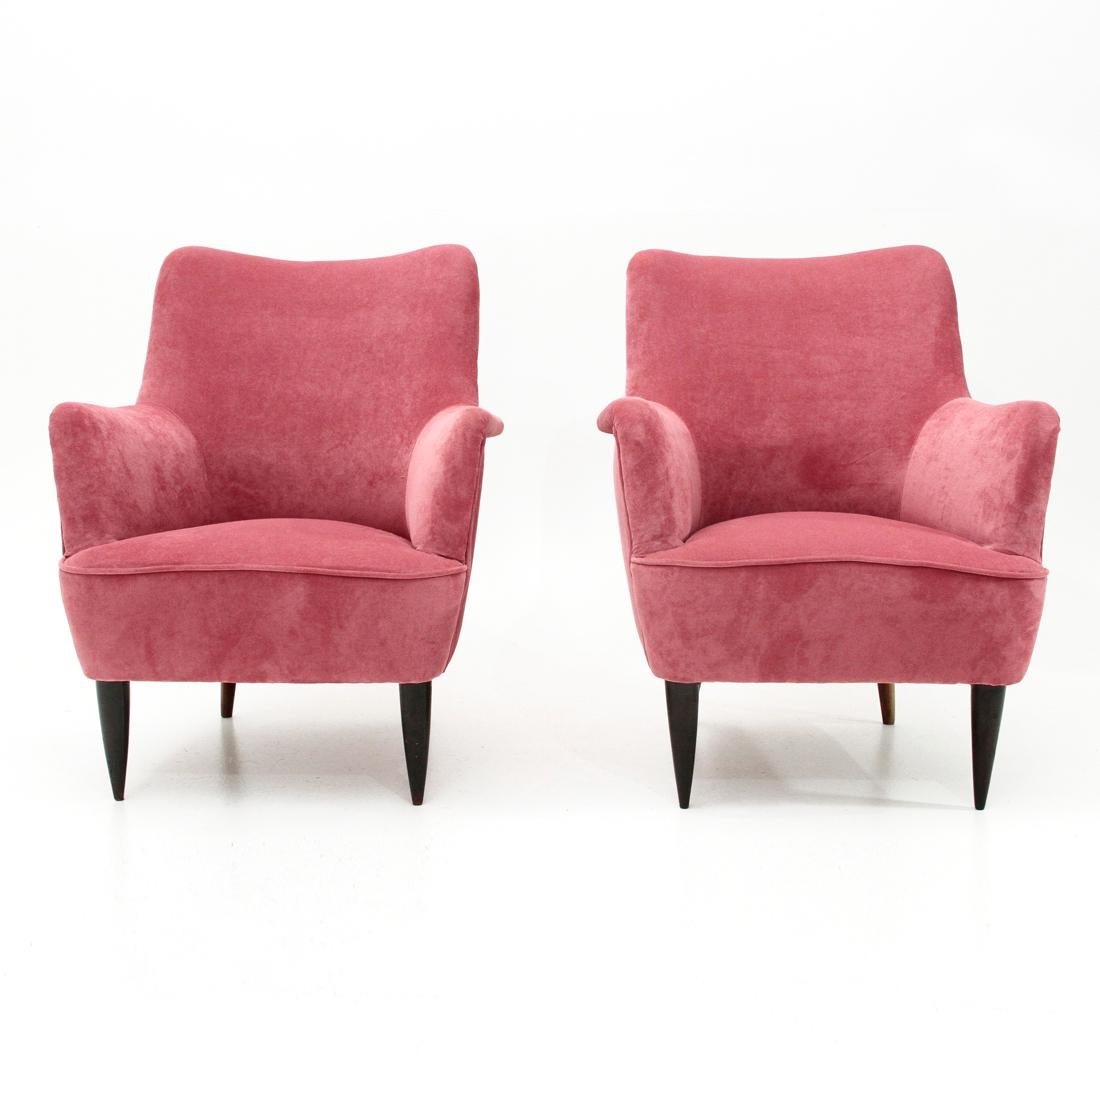 Mid-20th Century Italian Midcentury Pink Velvet Armchair, 1950s, Set of 2